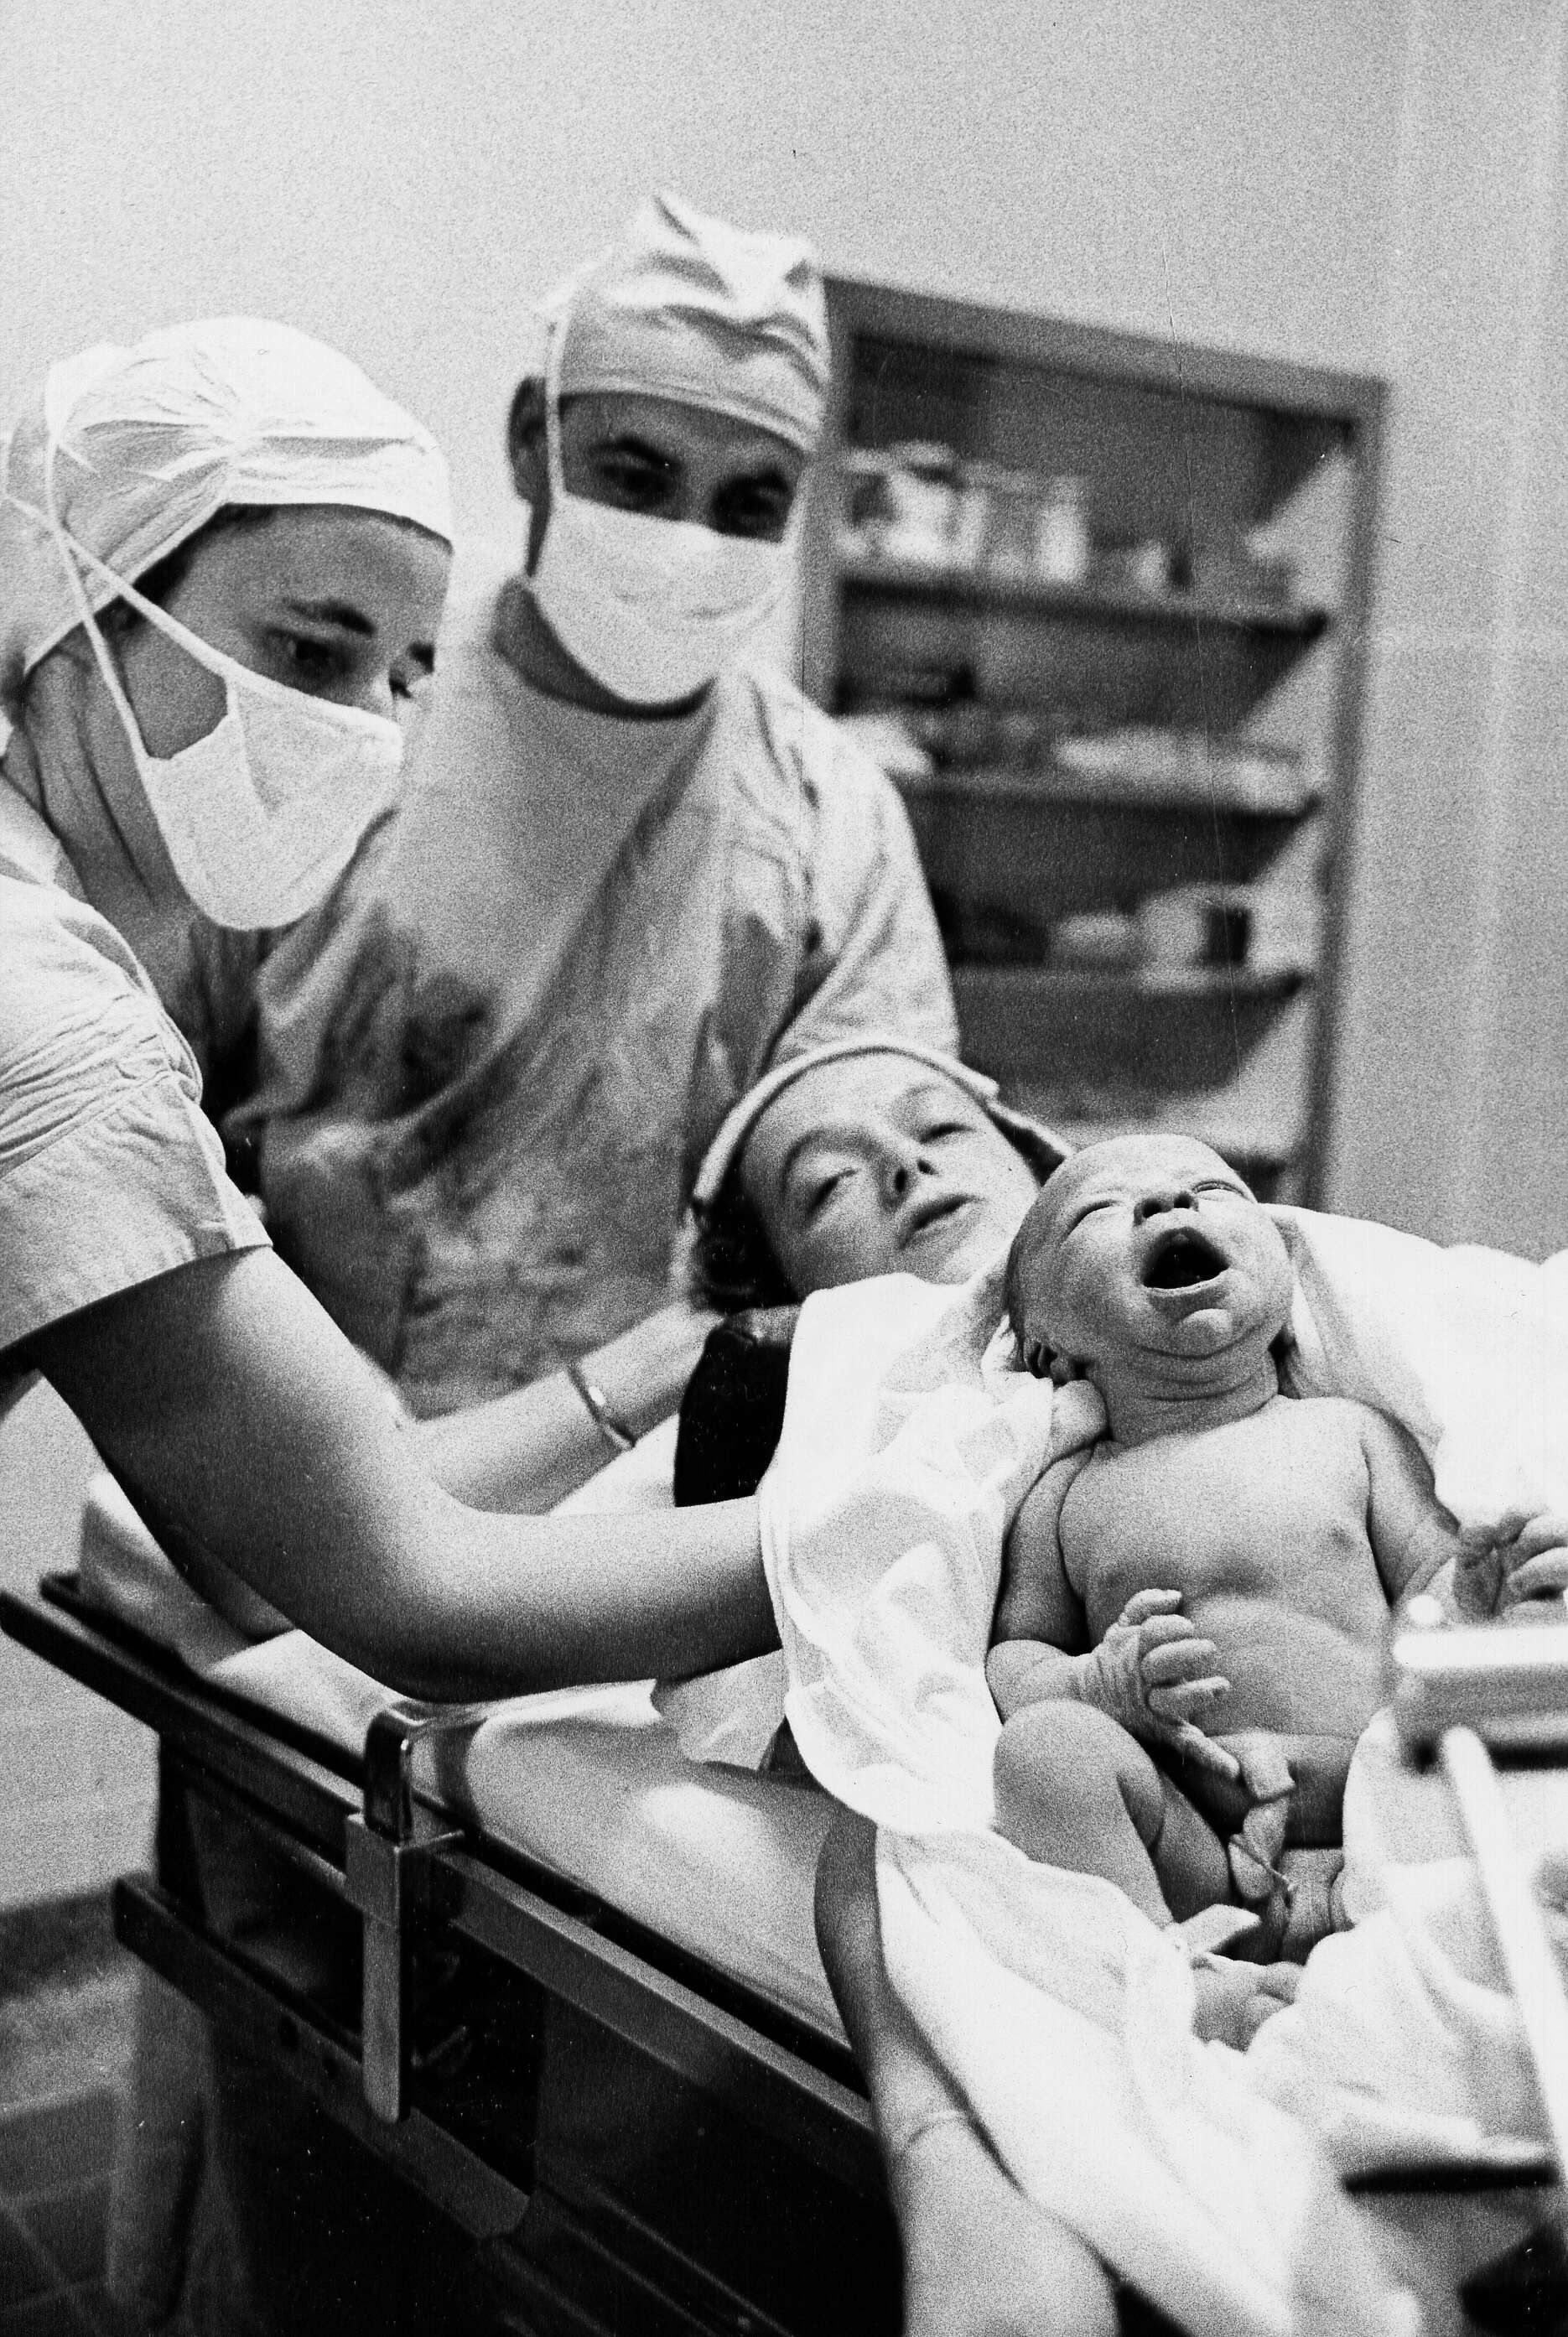 Pose du nouveau né, de la mère, du médecin et de l'infirmière après l'accouchement